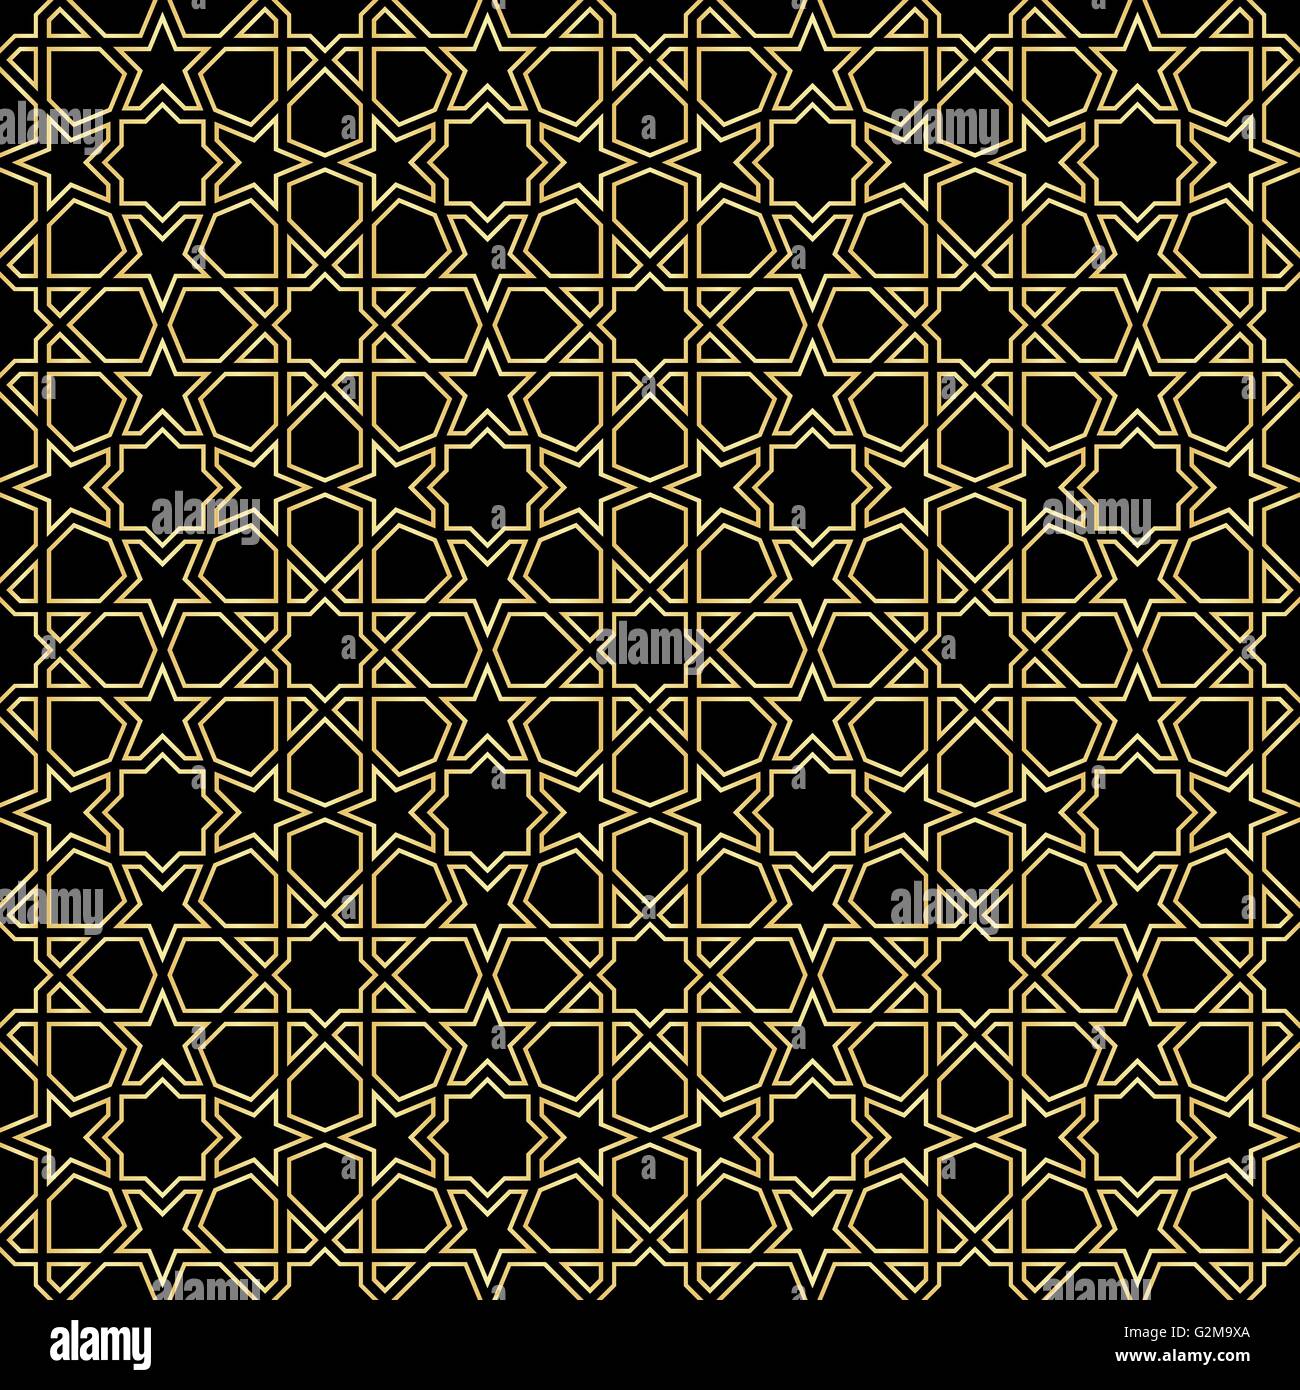 moroccan zellige seamless Stock Vector Image & Art - Alamy